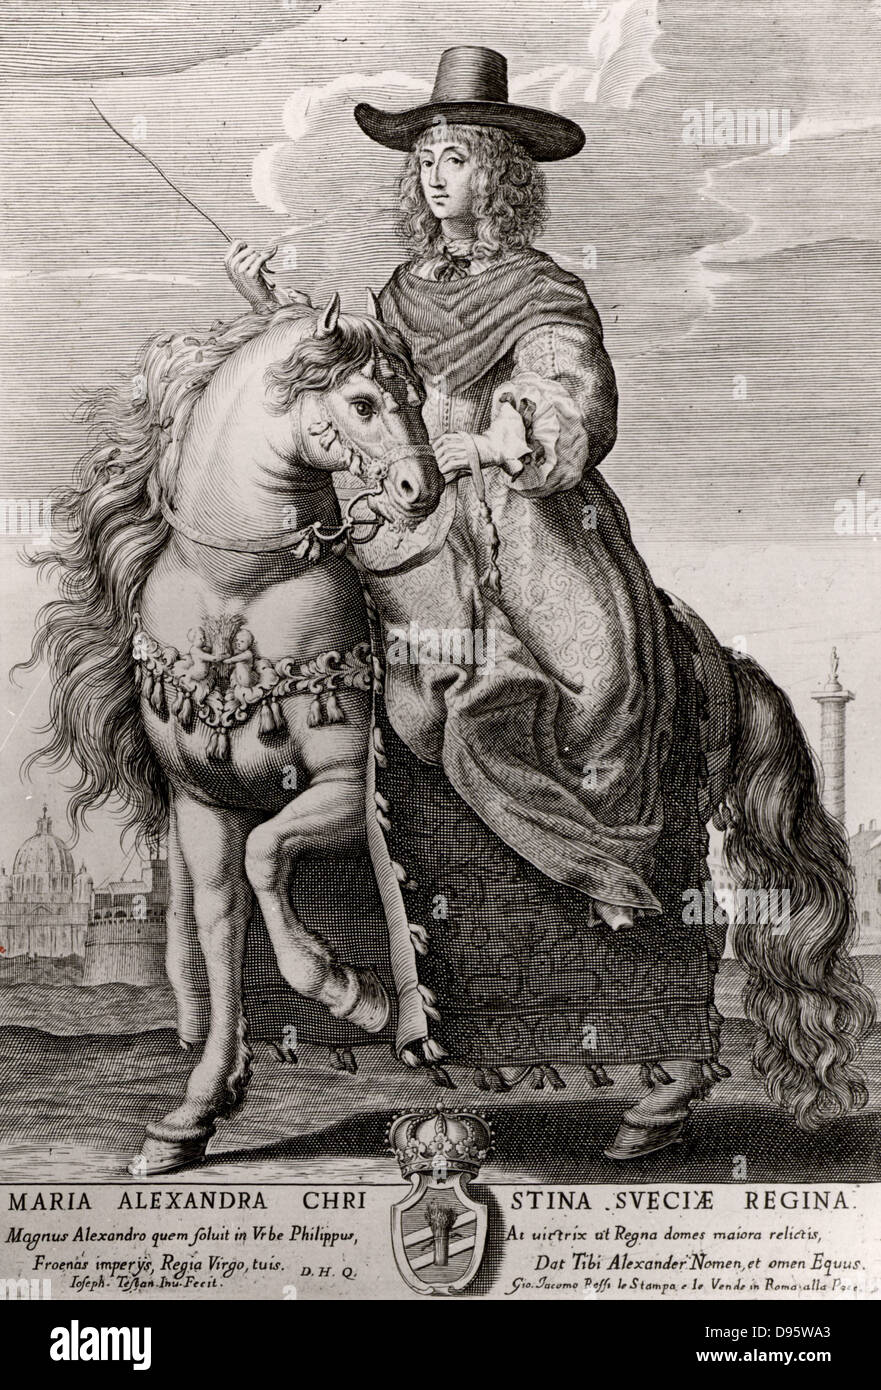 La reine Christine de Suède (1626-1689). Accéda au trône en 1632. Abdiqua en 1654 pour qu'elle puisse pratiquer sa foi catholique romaine dans laquelle elle s'était convertie, la Suède étant un pays protestant. Gravure de Christina à cheval à Rome sous son nouveau nom, Maria Christina Alexandra. Banque D'Images